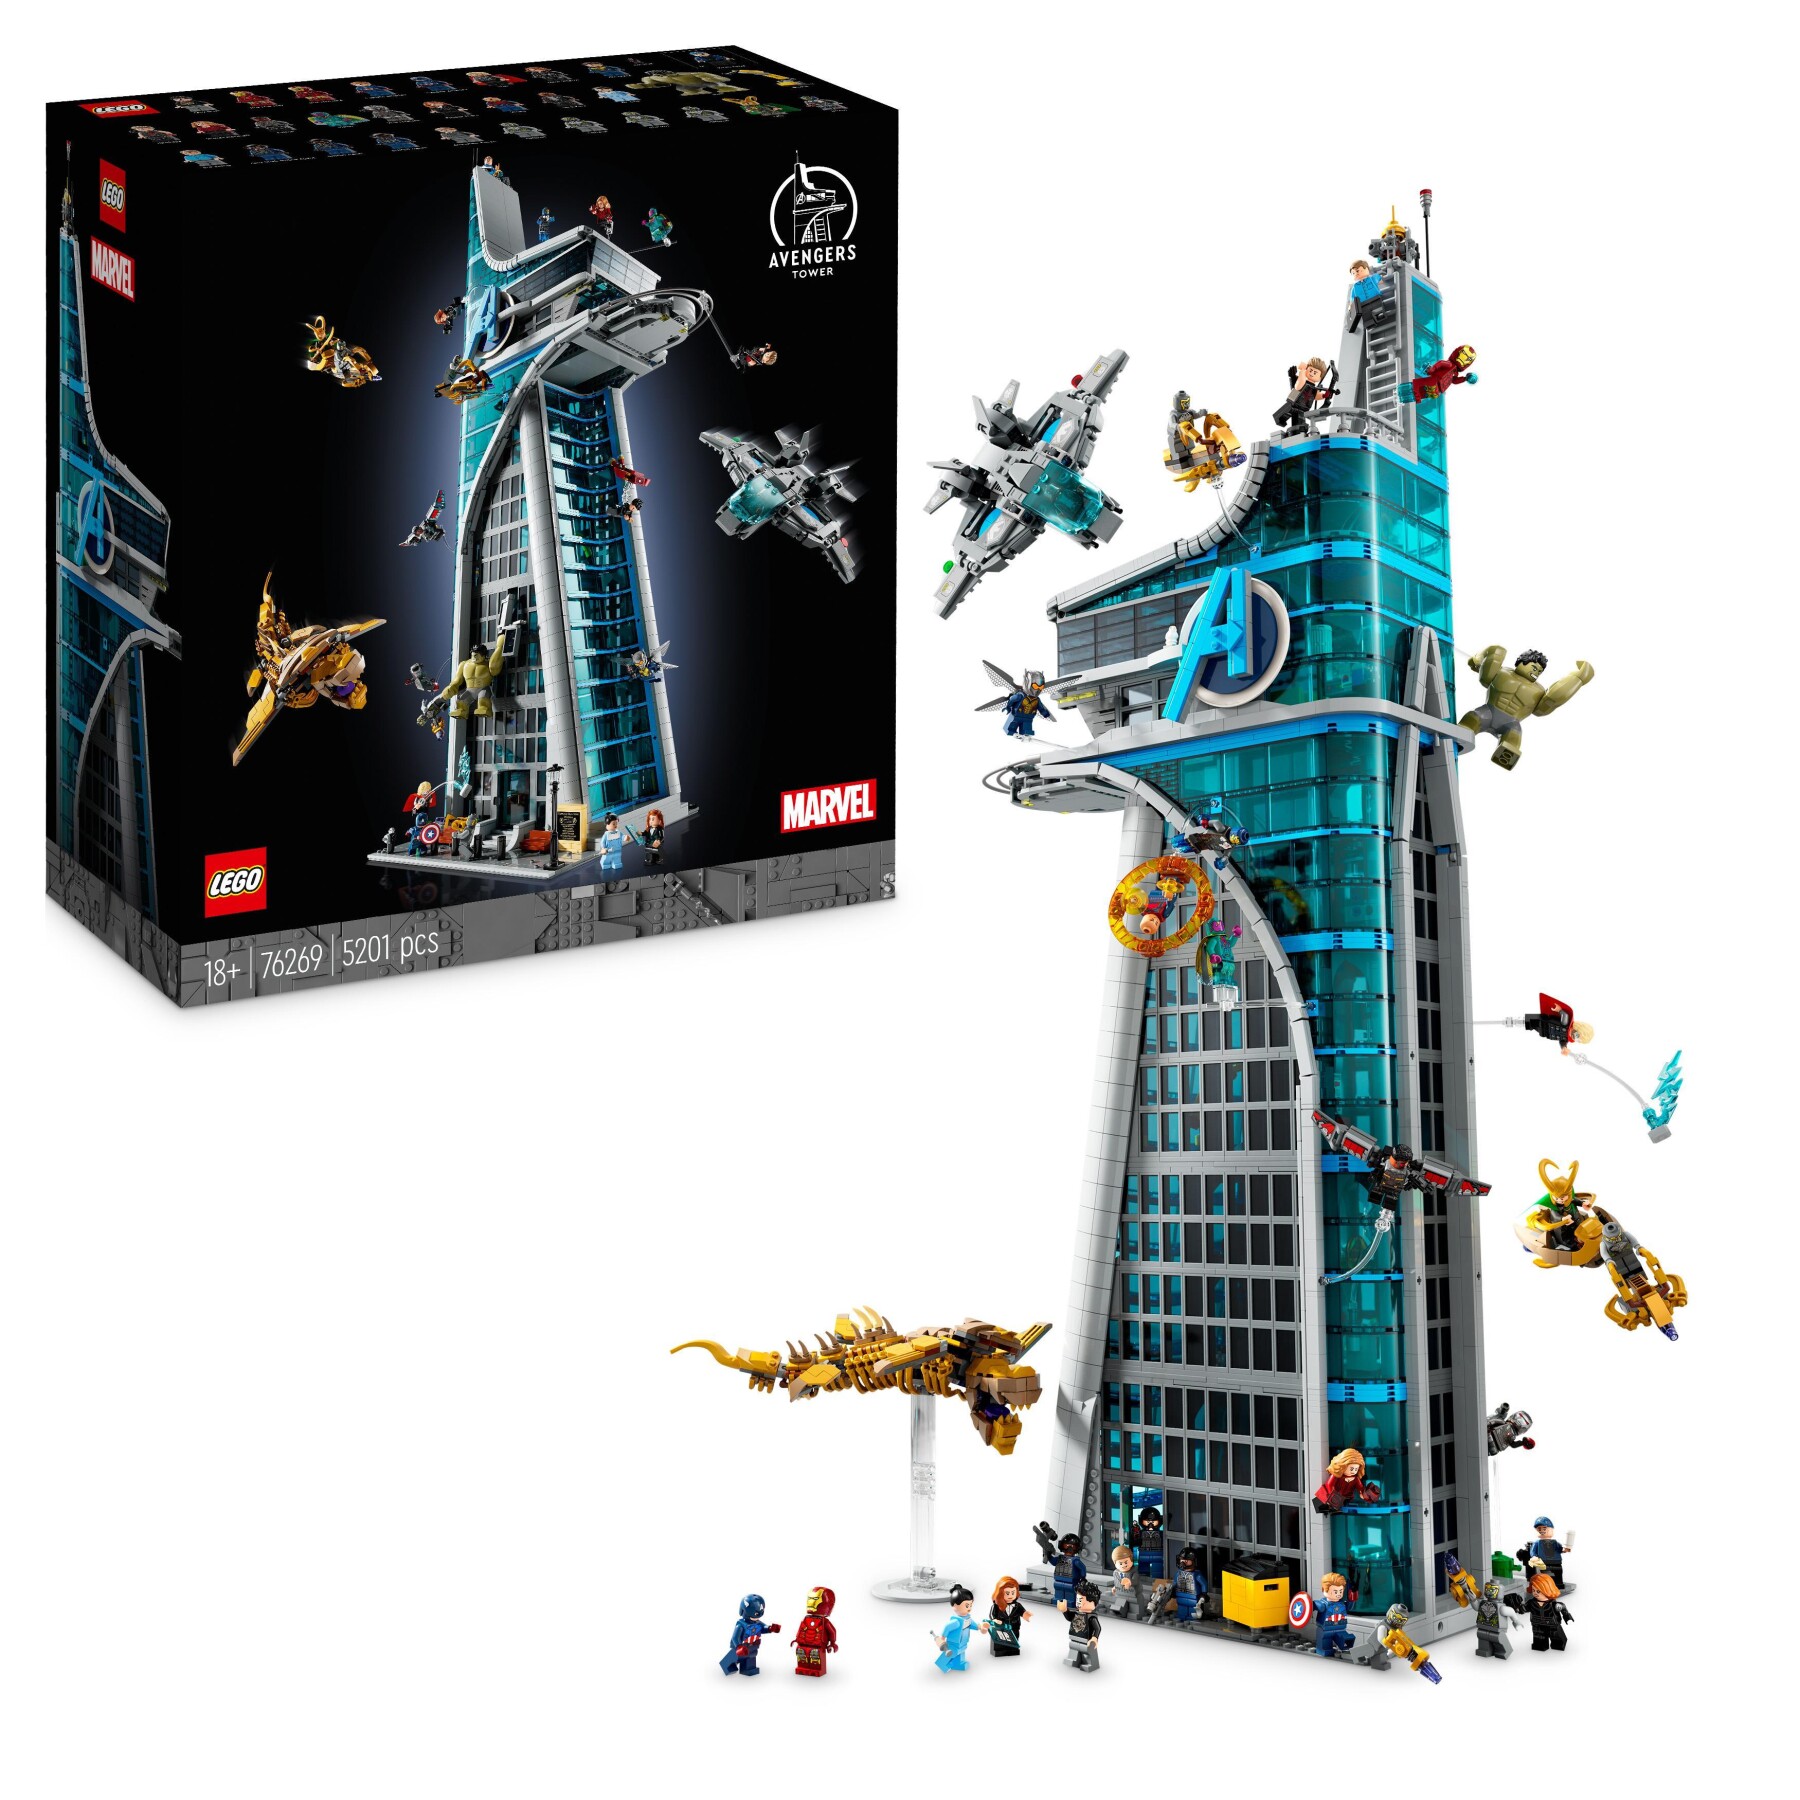 Lego marvel 76269 torre degli avengers, kit modellismo per adulti con modellino di aereo e 31 minifigure, regalo uomo o donna - LEGO SUPER HEROES, Avengers